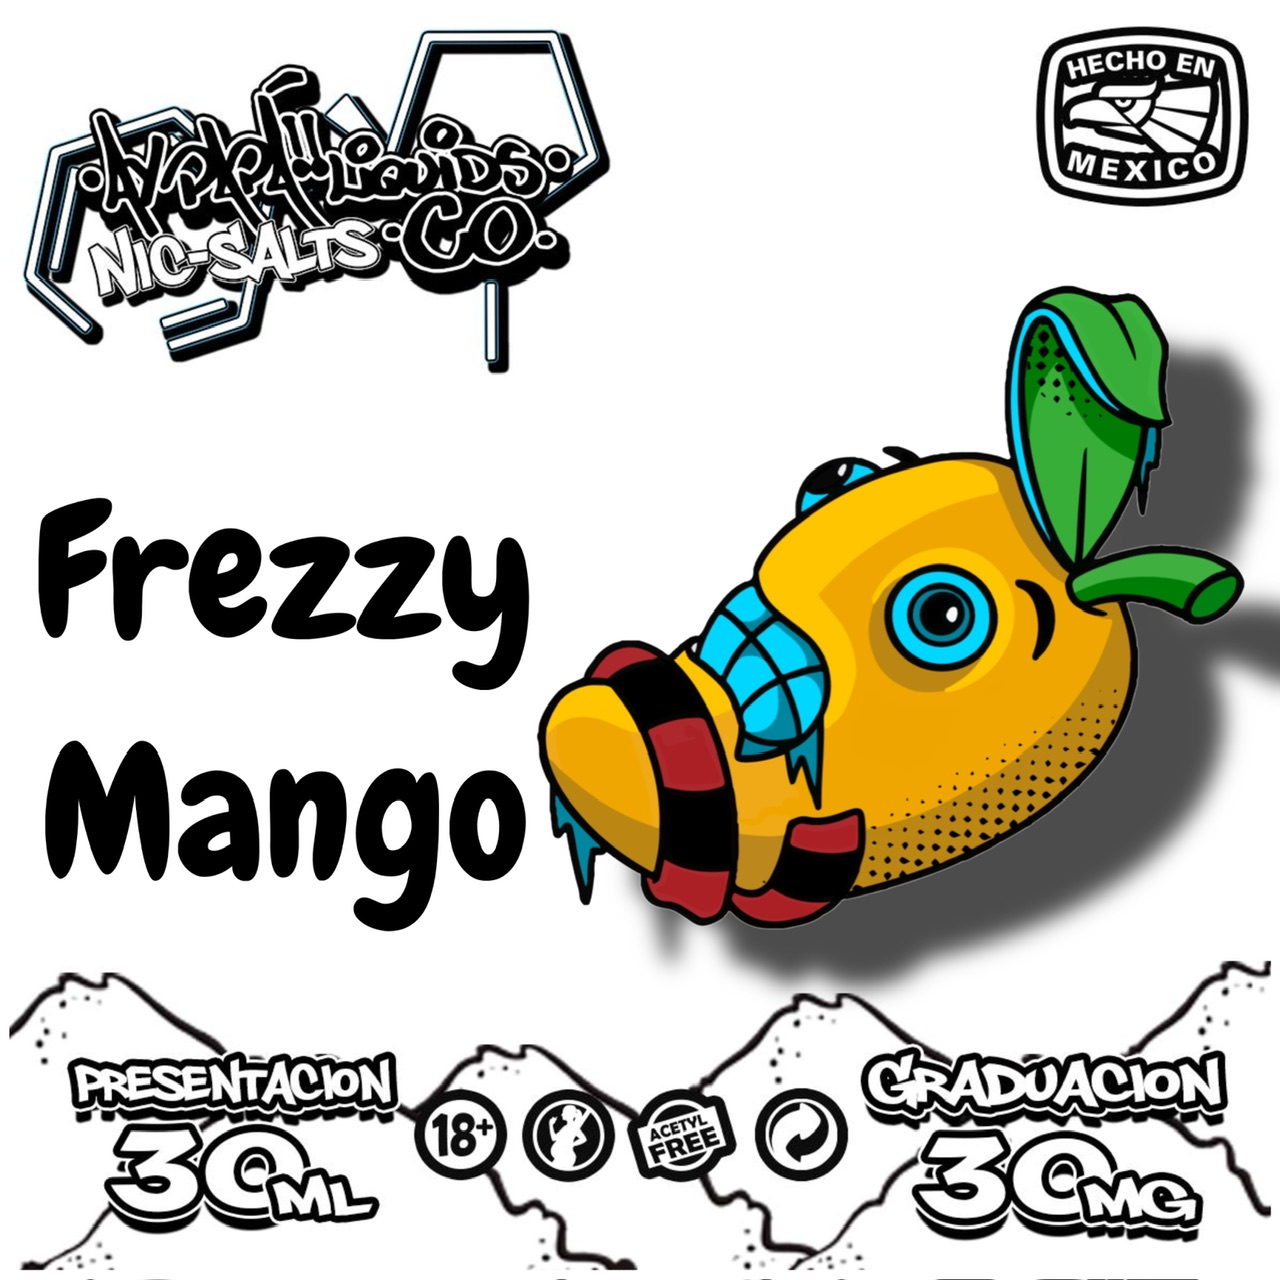 Frezzy Mango Nicsalt